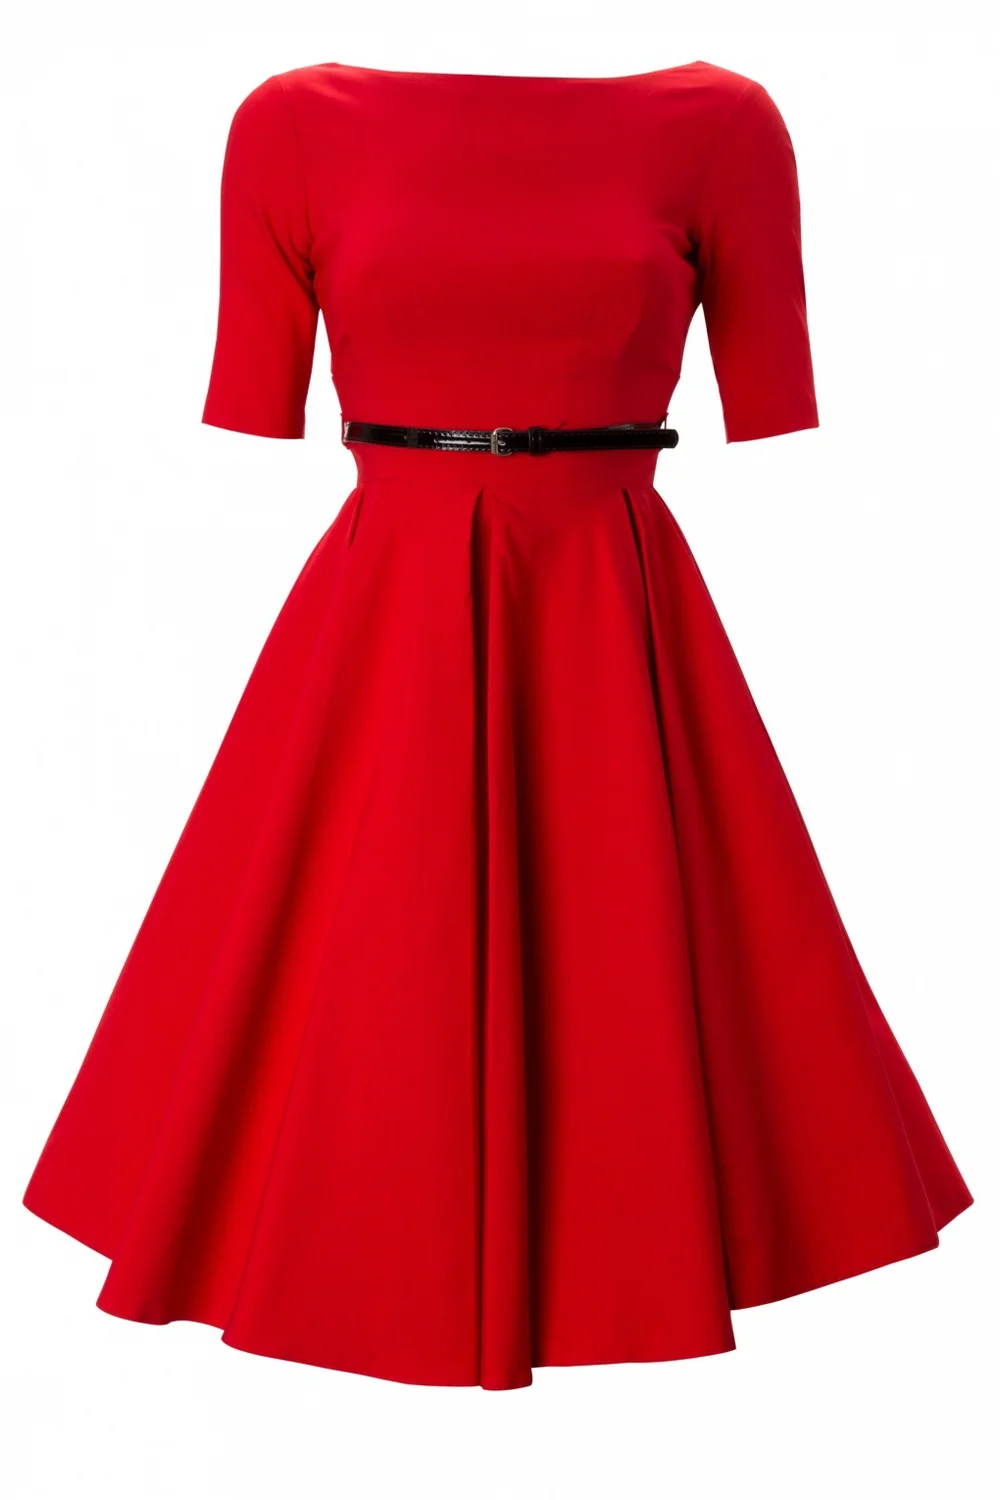 Летние женские винтажные 50 s Одри Хепберн Стиль ретро рокабилли пинап лодочка шеи Половина рукава качели красное платье большой плюс размер vestido - Цвет: red